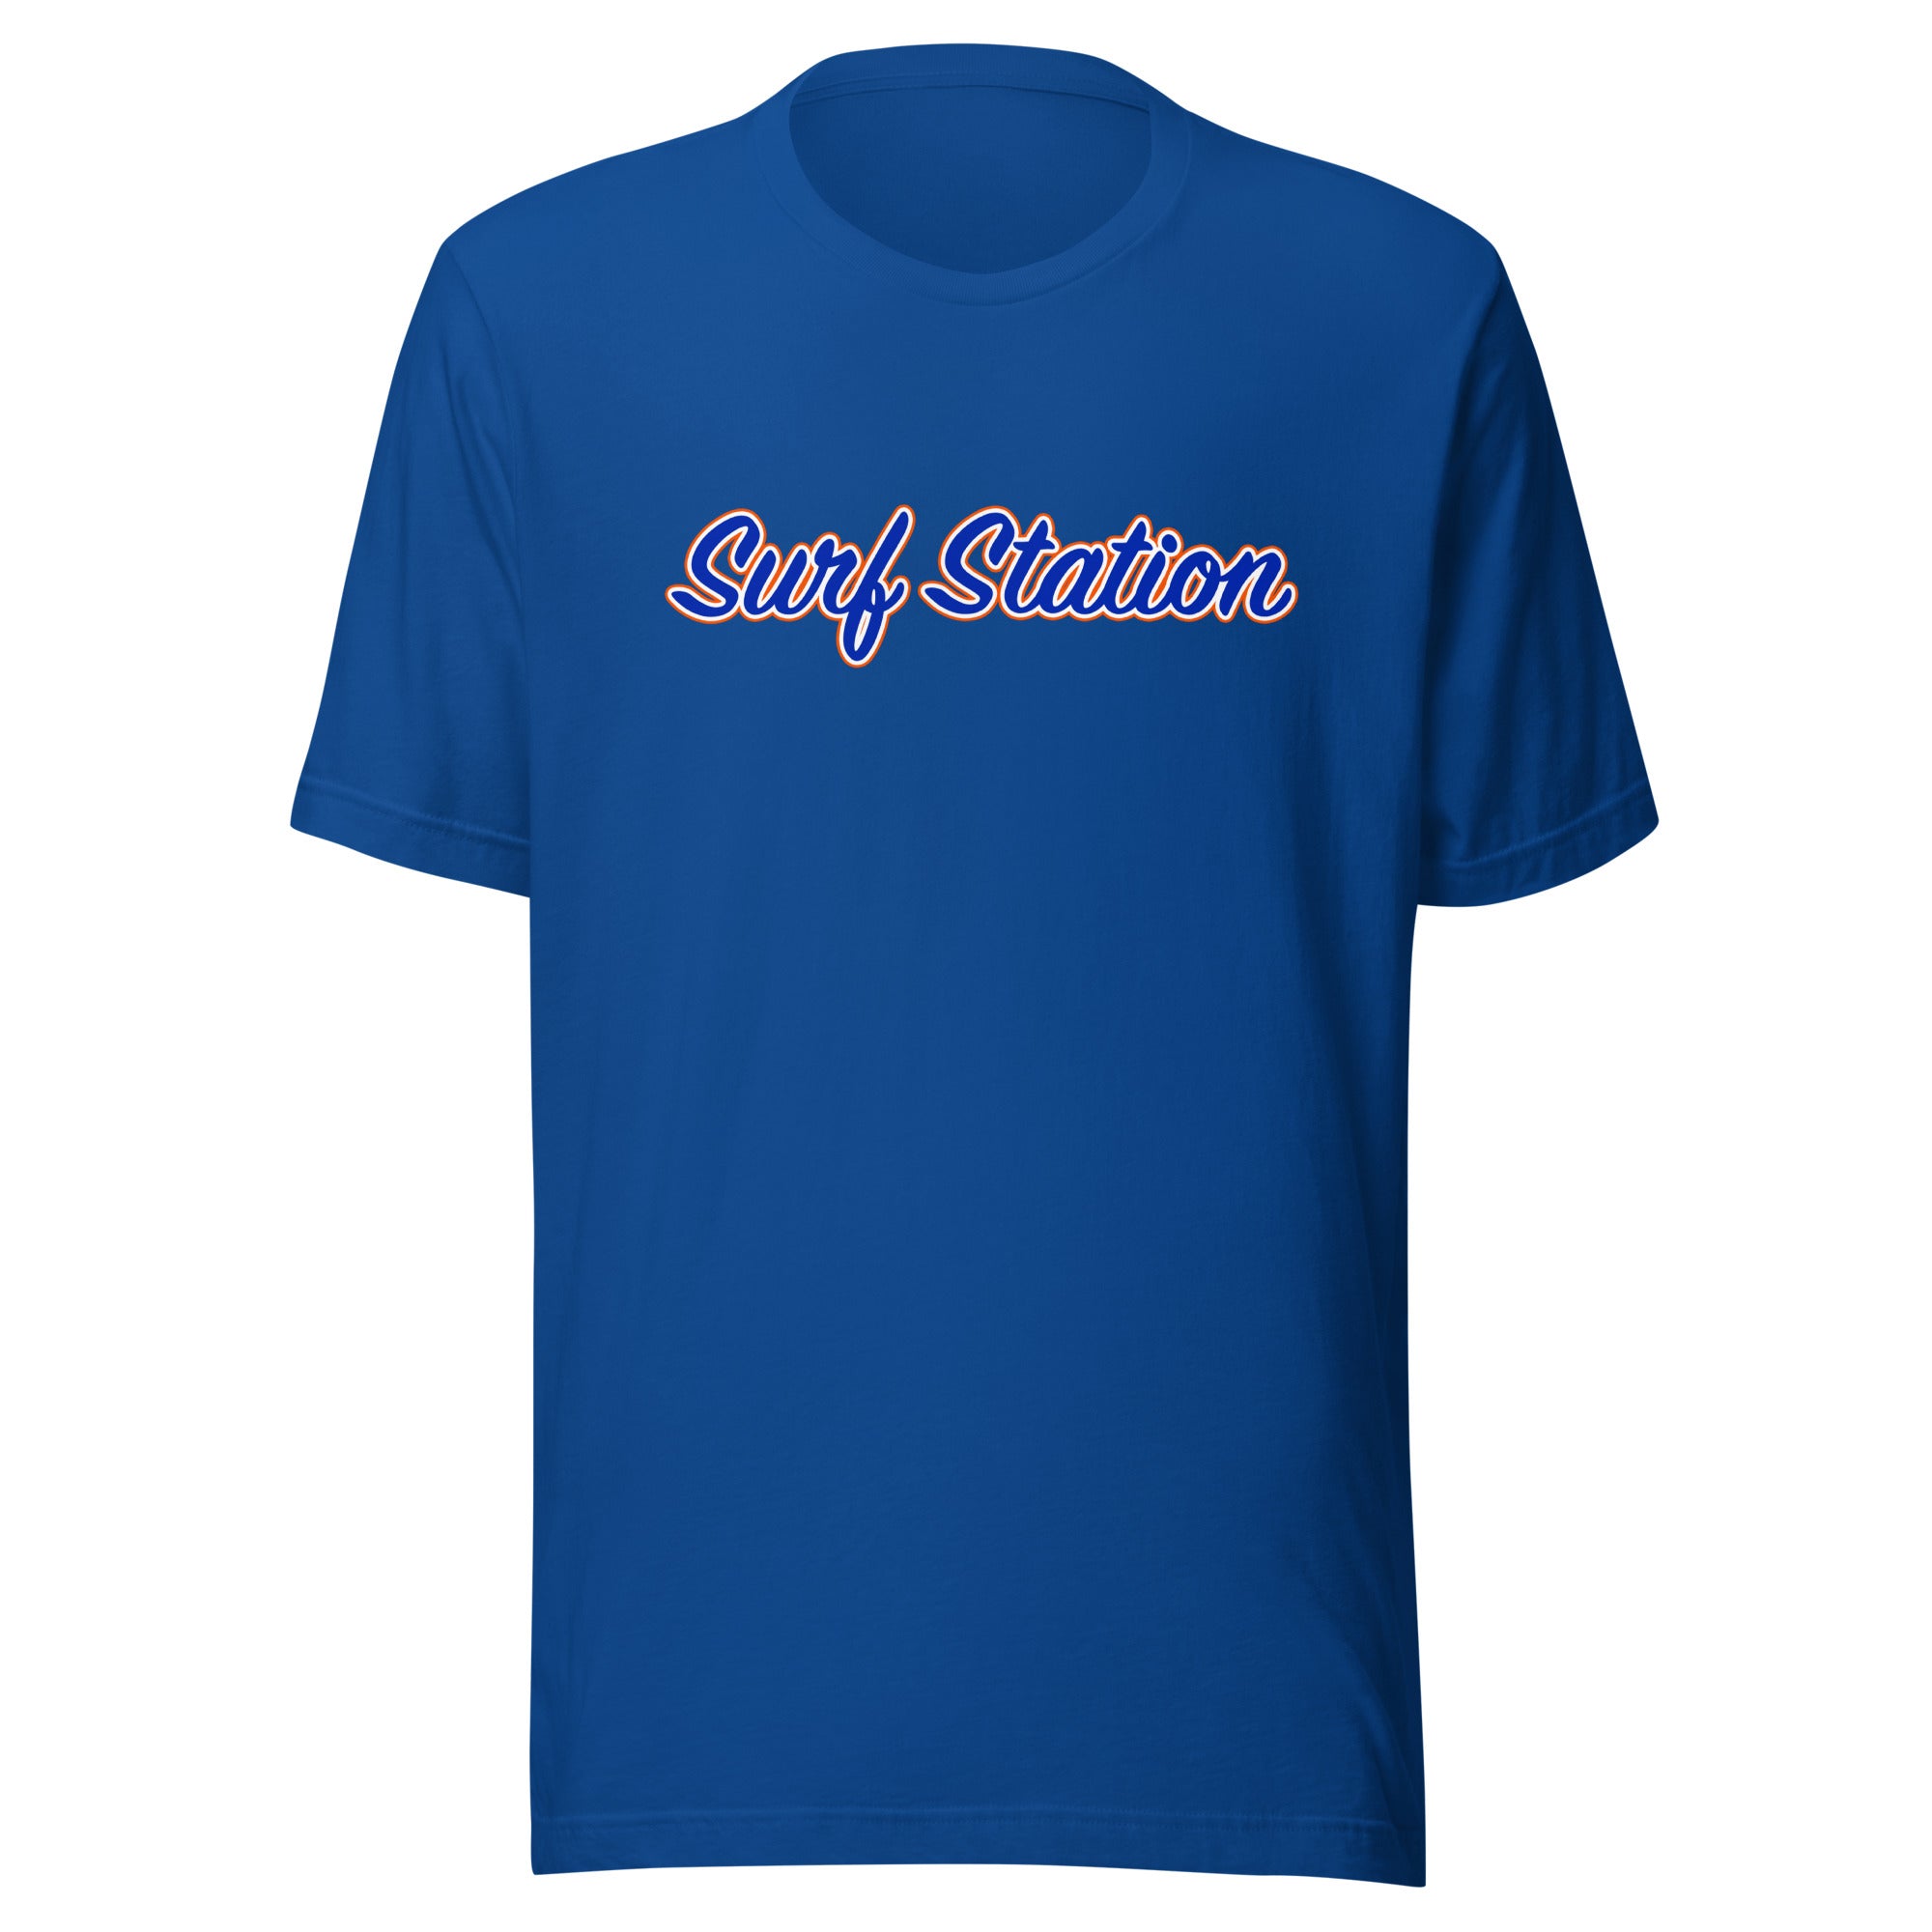 Surf Station Orange & Blue Men's S/S T-Shirt